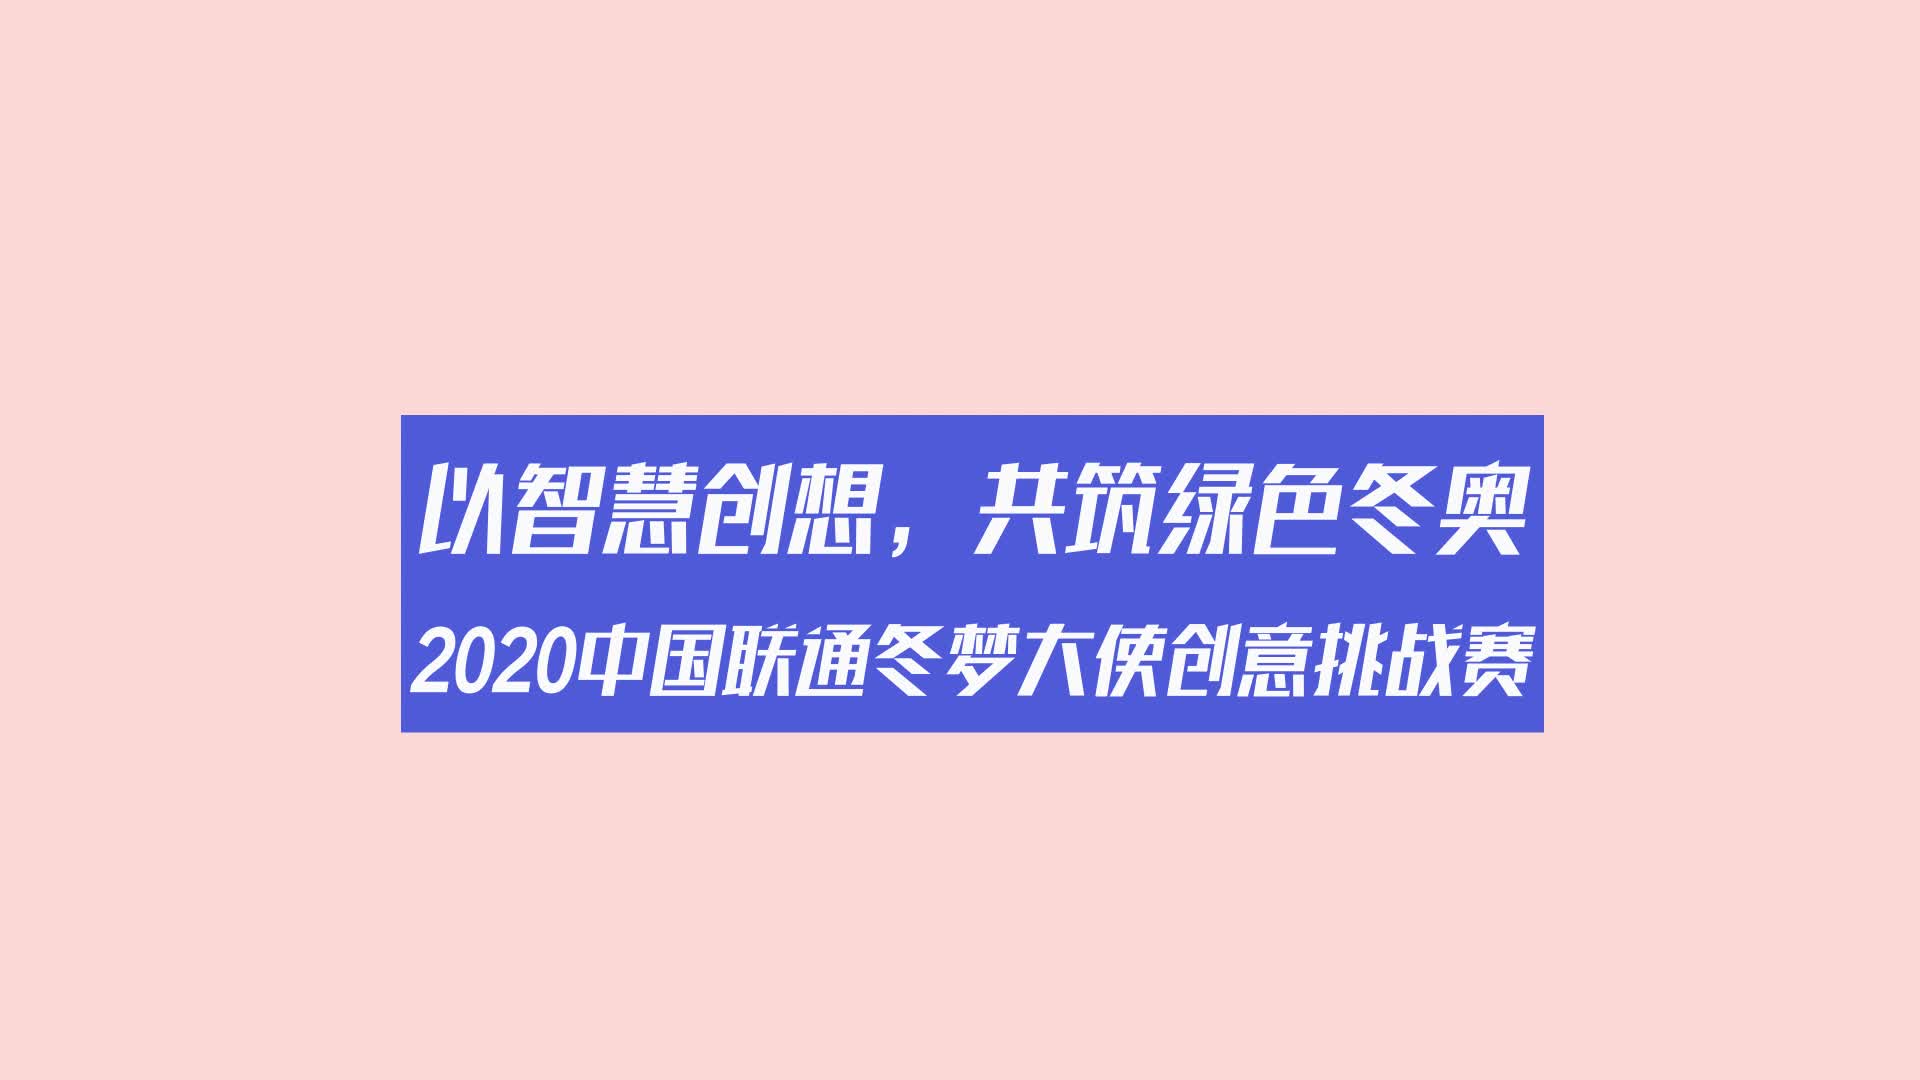 2020中国联通冬梦大使创意挑战赛智慧工坊金句大放送第二弹